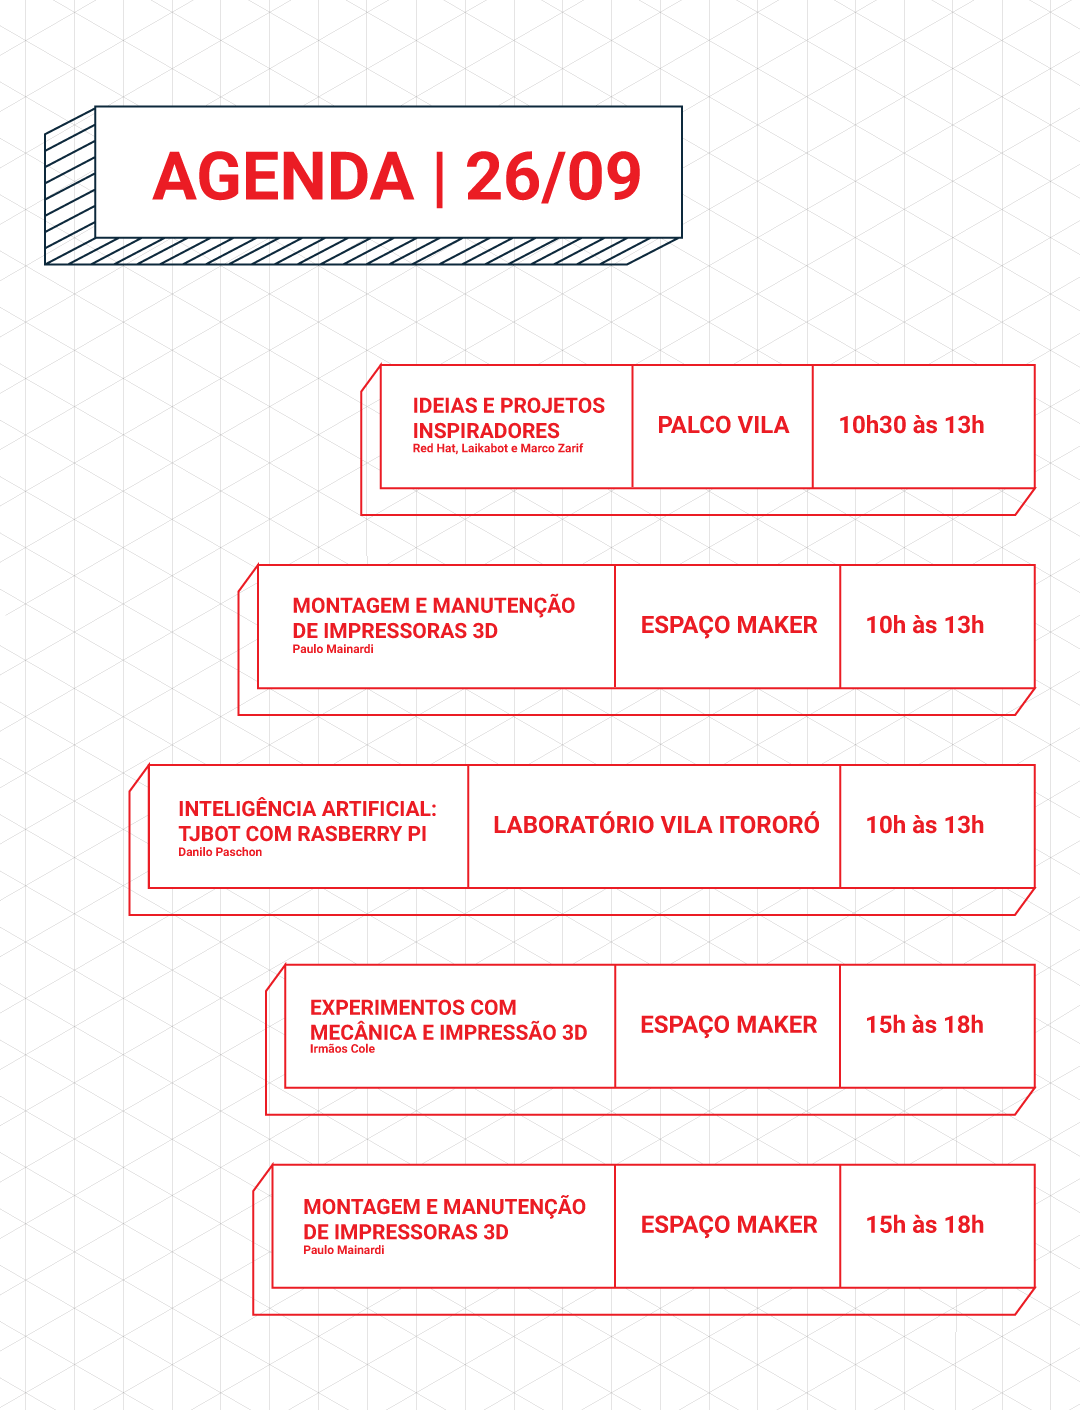 Background com textura hexagonal, constando a agenda do dia 26/09 da #SPMW 2018